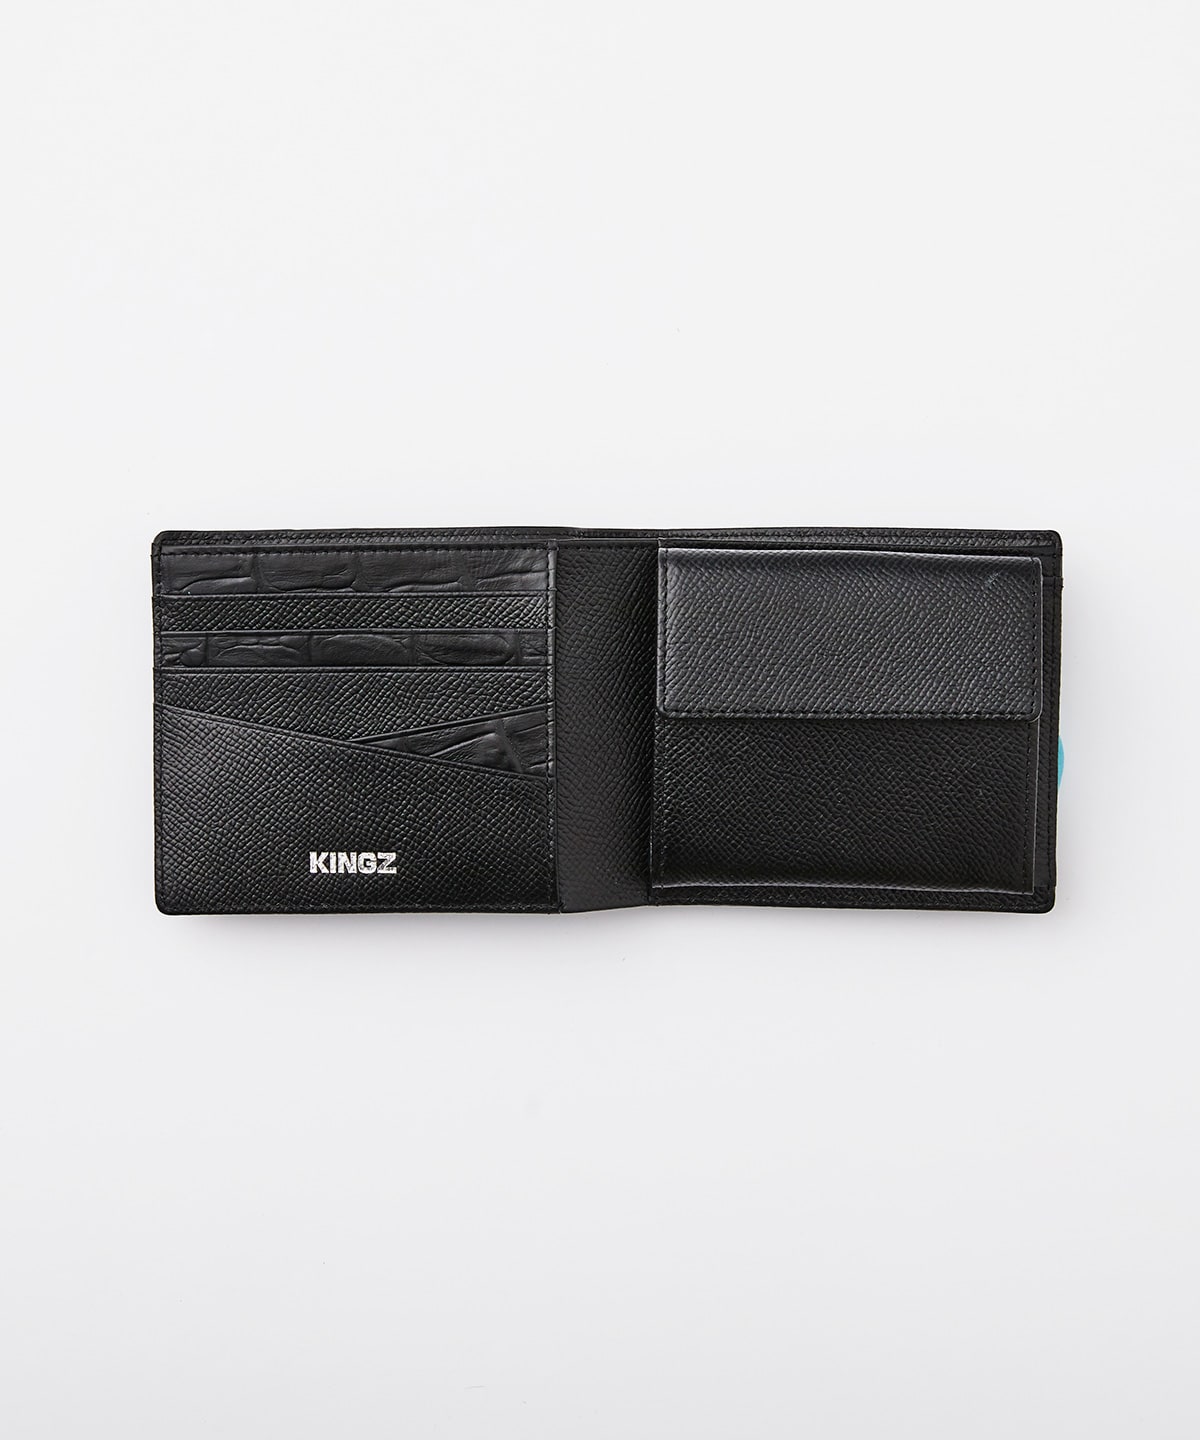 クロコ×スムース 折財布